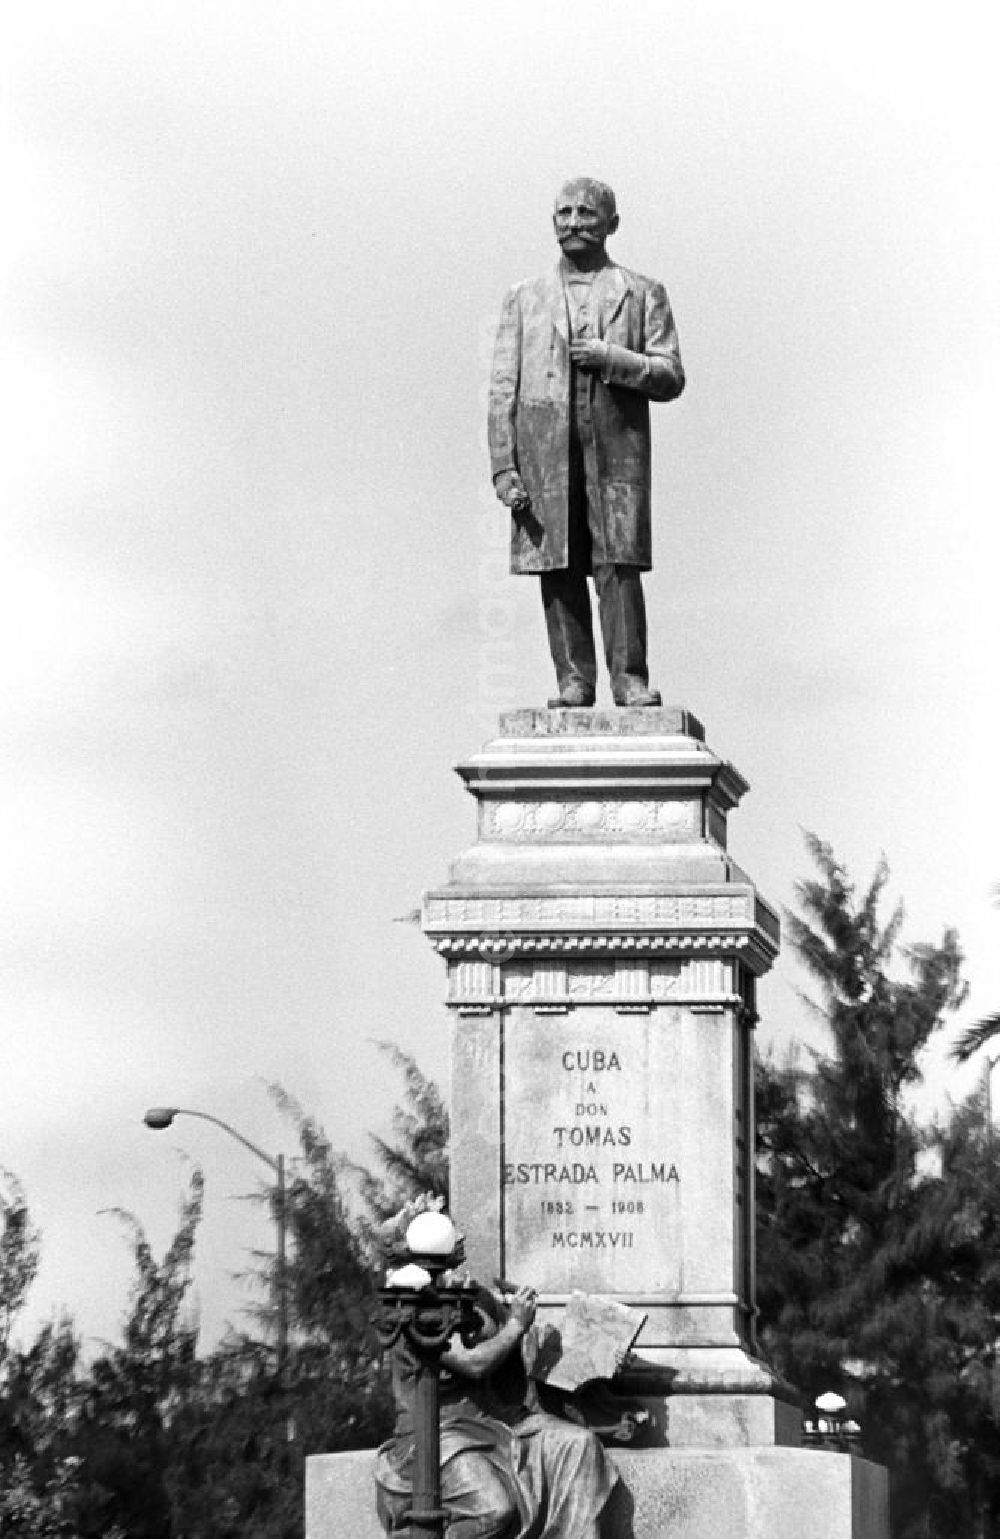 GDR picture archive: Havanna - Blick auf das Monument für Tomás Estrada Palma in Havanna, von 1902 bis 19